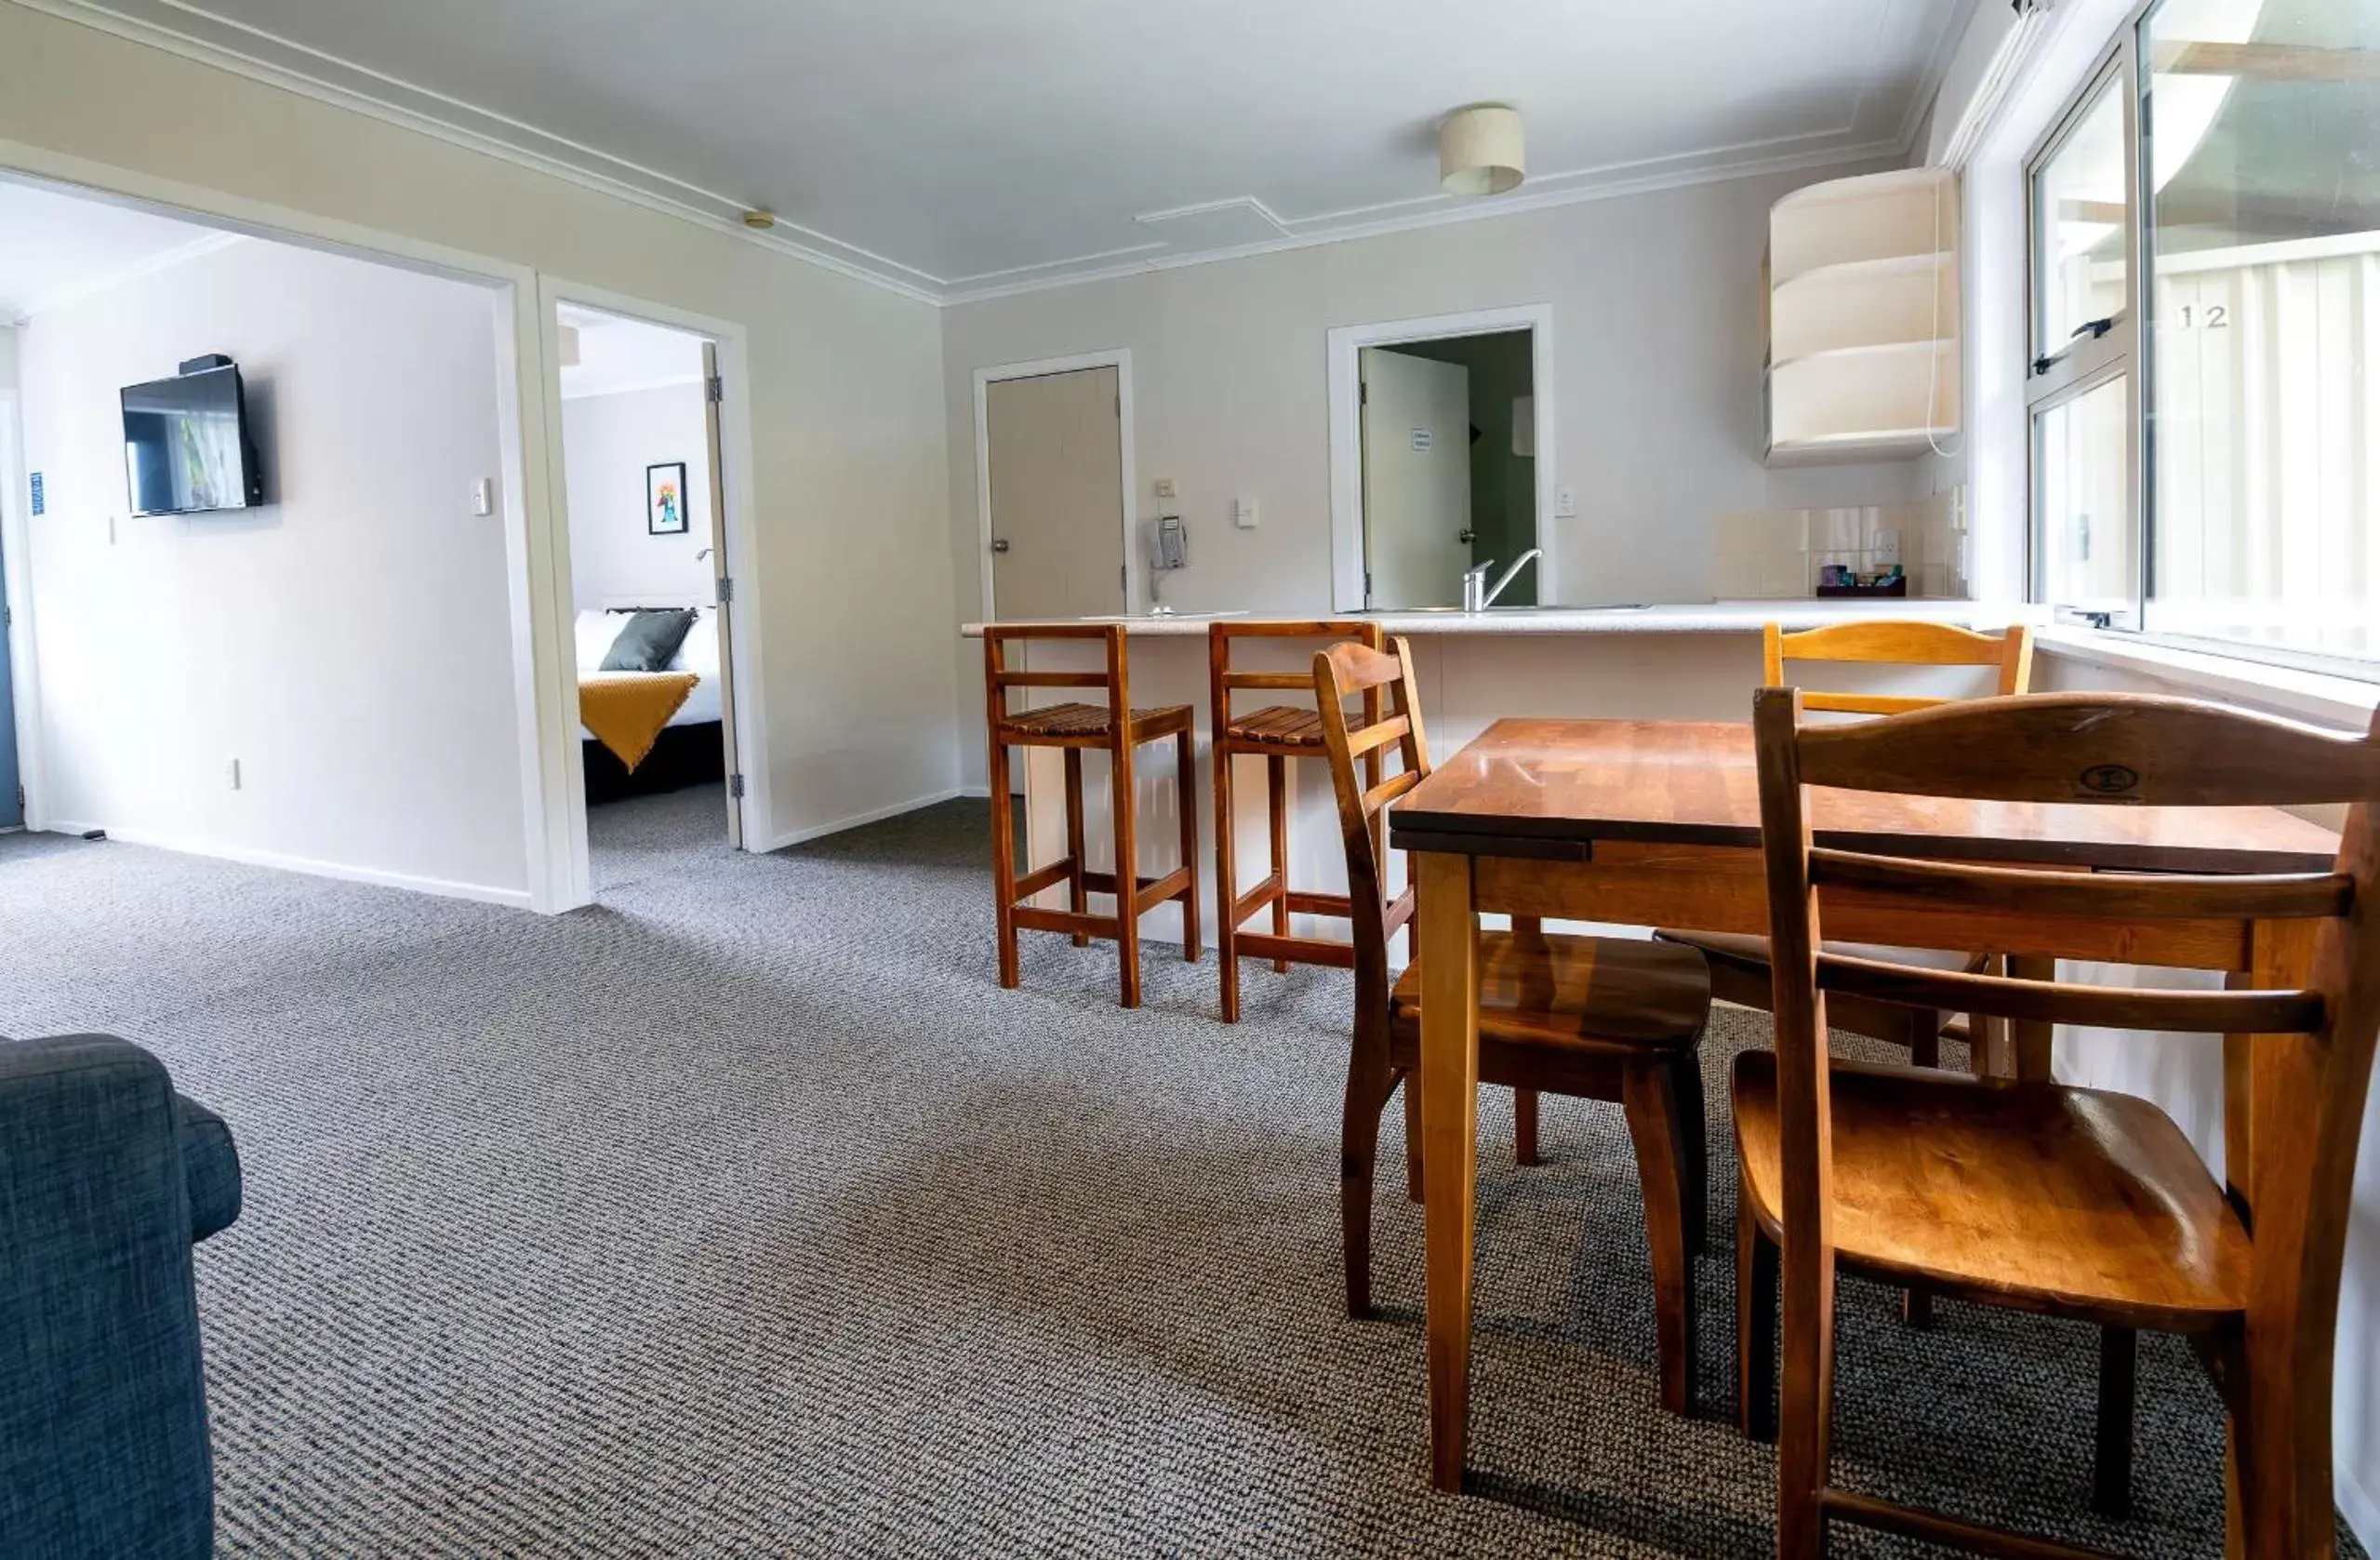 Kitchen or kitchenette, Dining Area in Best Western Braeside Rotorua